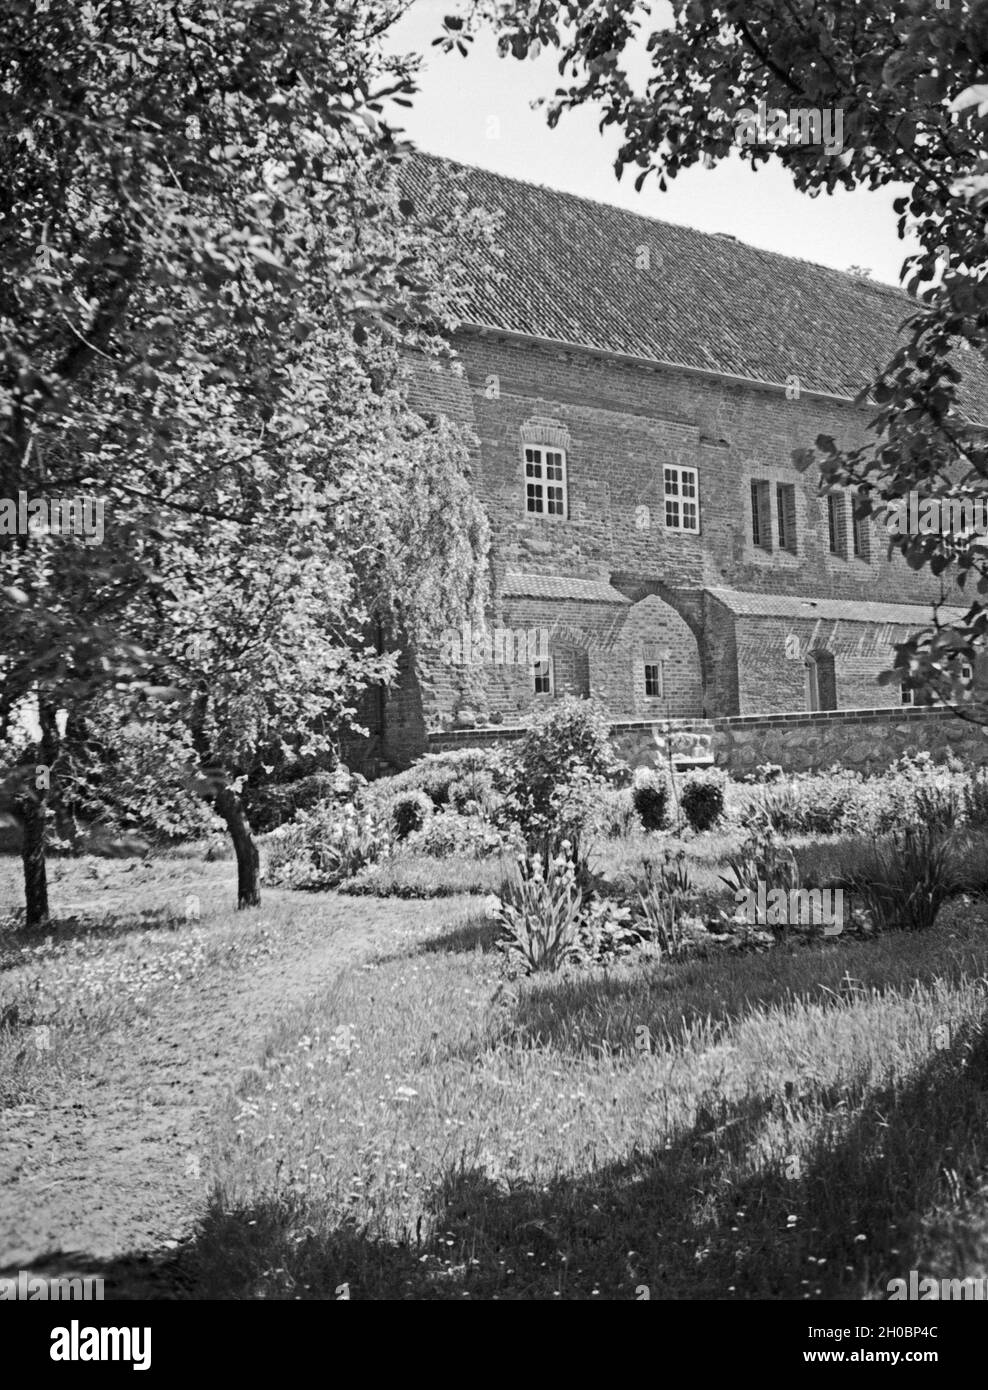 Die Ordensburg Lochstädt am Frischen Haff in Ostpreußen, 1930er Jahre. Castle Lochstaedt near Vistula Lagoon, East Prussia, 1930s. Stock Photo